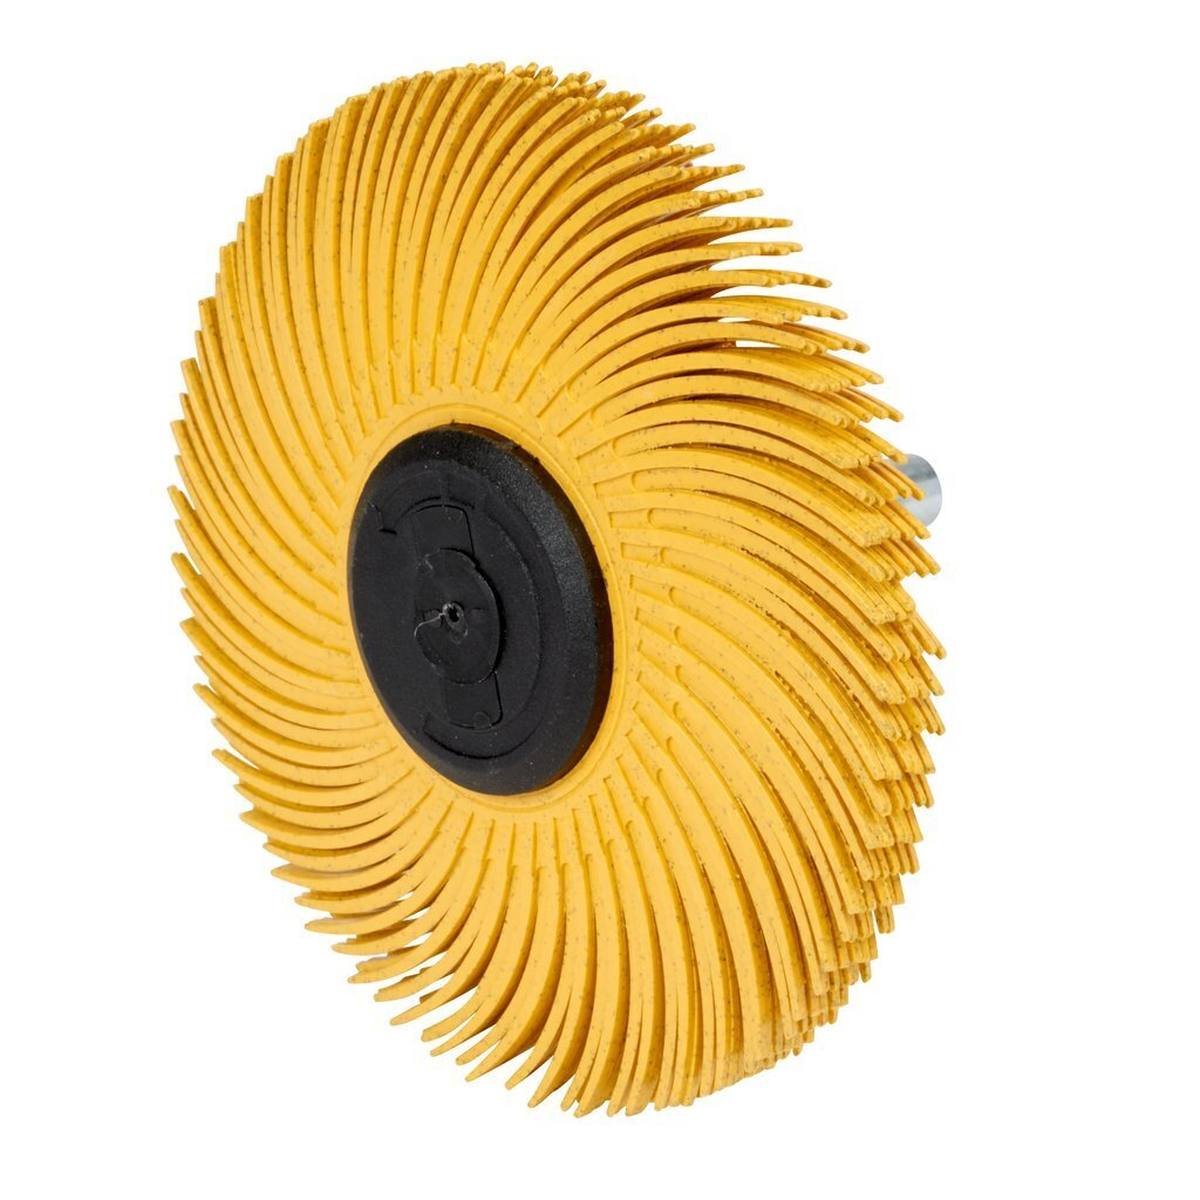 3M Scotch-Brite Radial Bristle Disc BB-ZS mit Schaft, gelb, 76,2 mm, P80, Typ C #62968